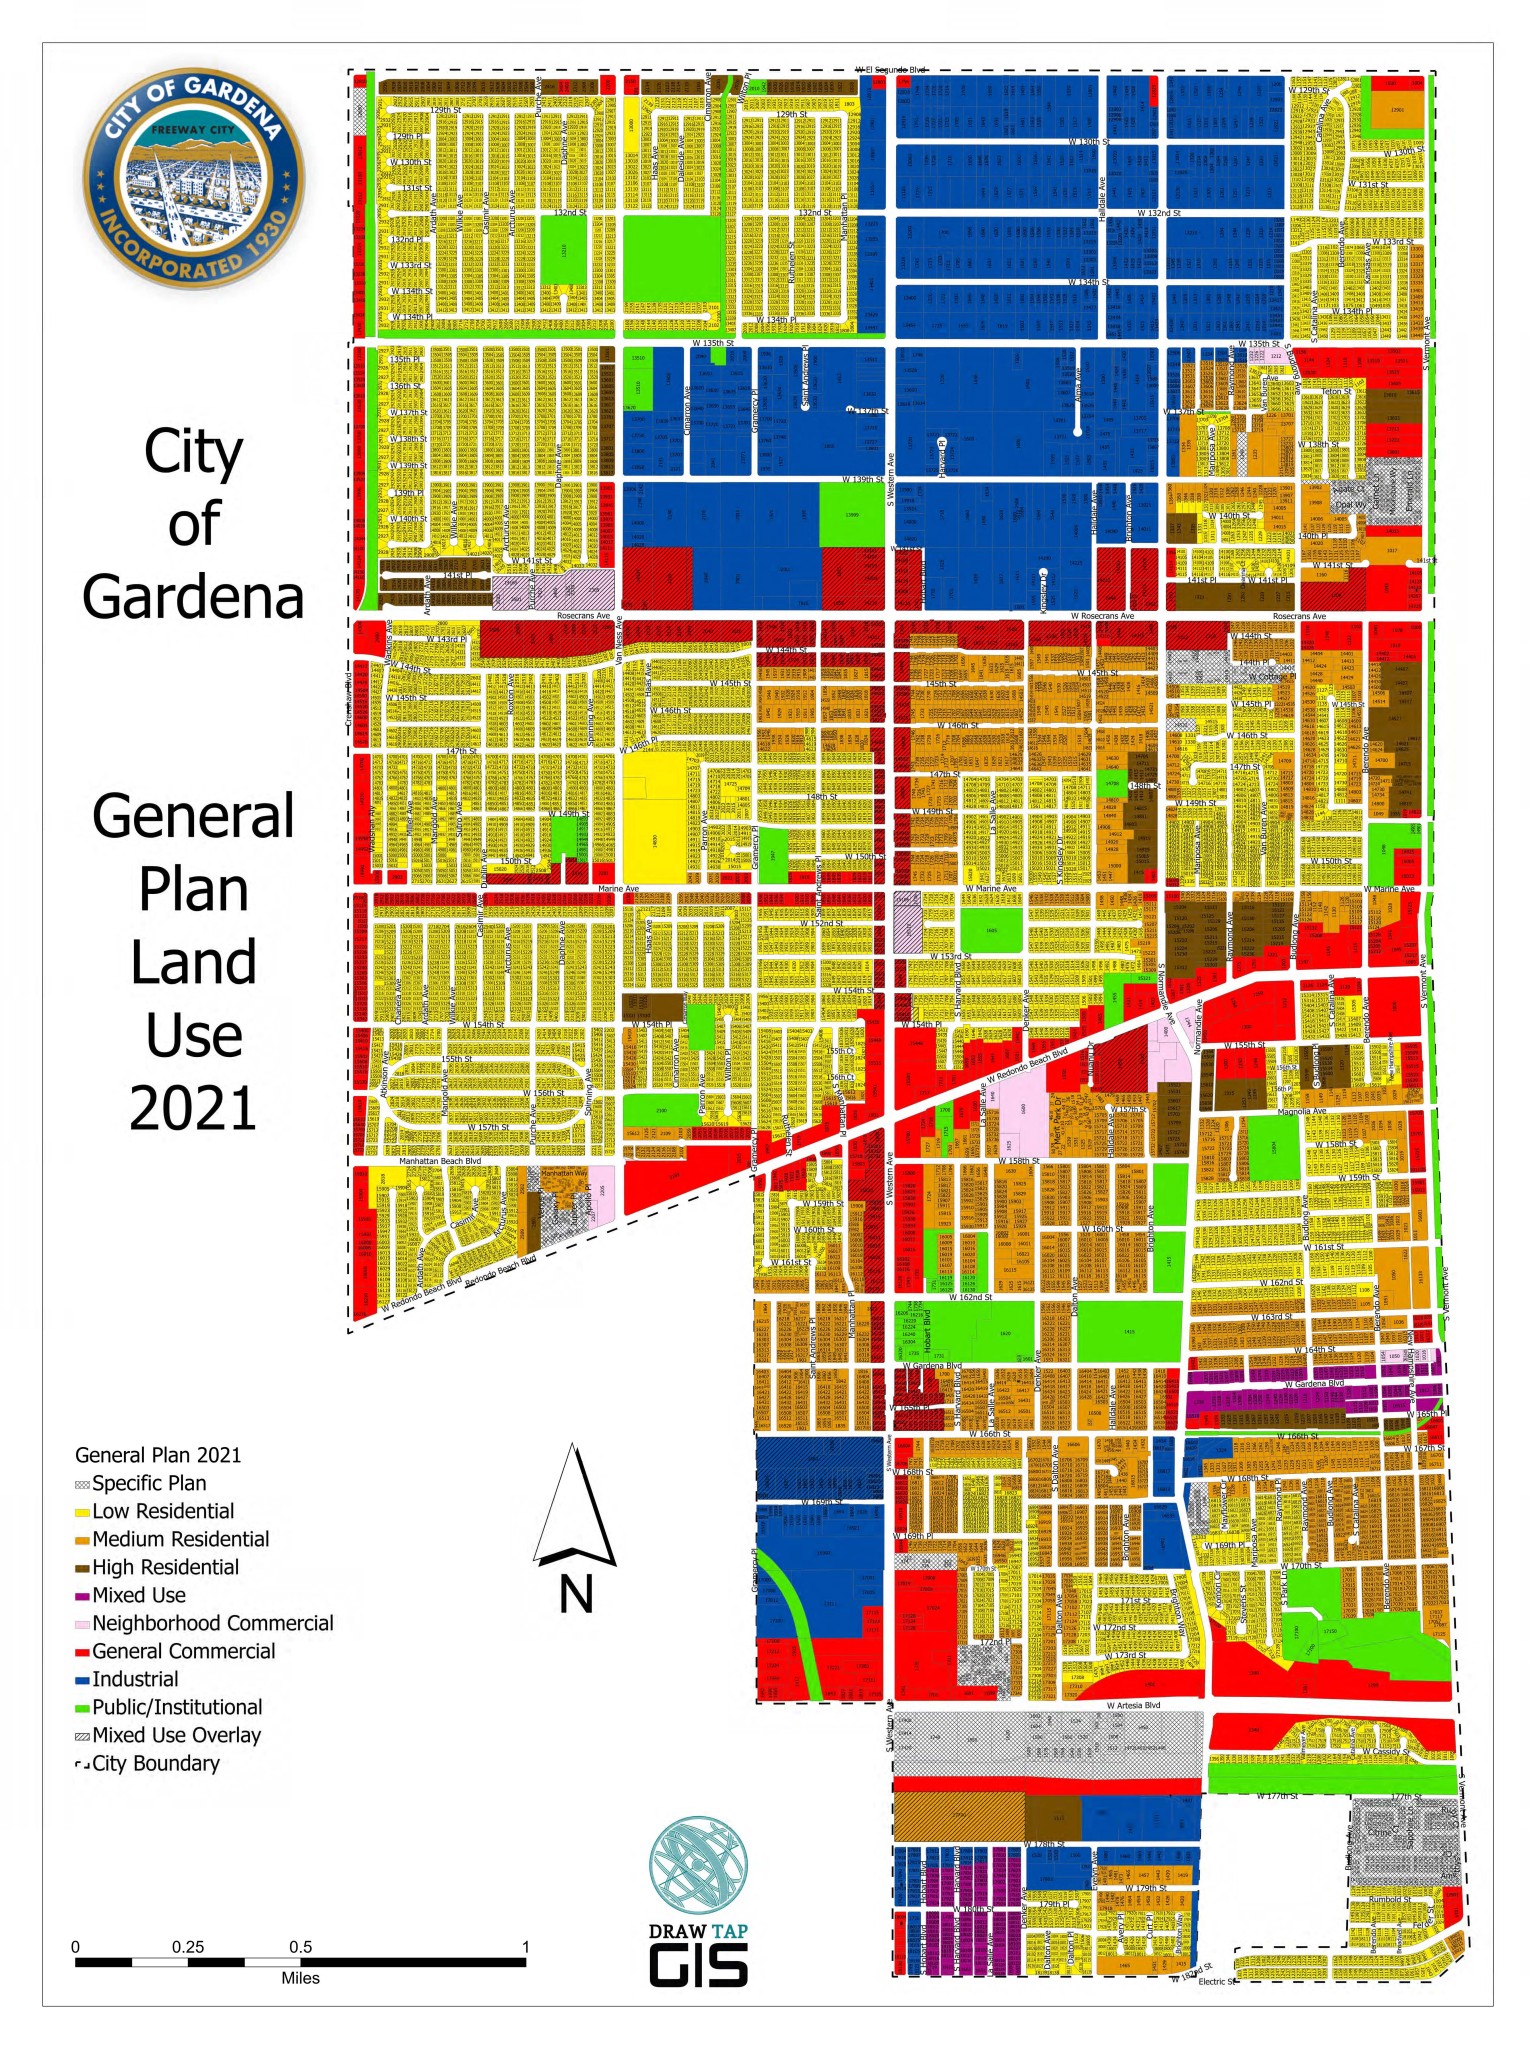 City Maps City of Gardena